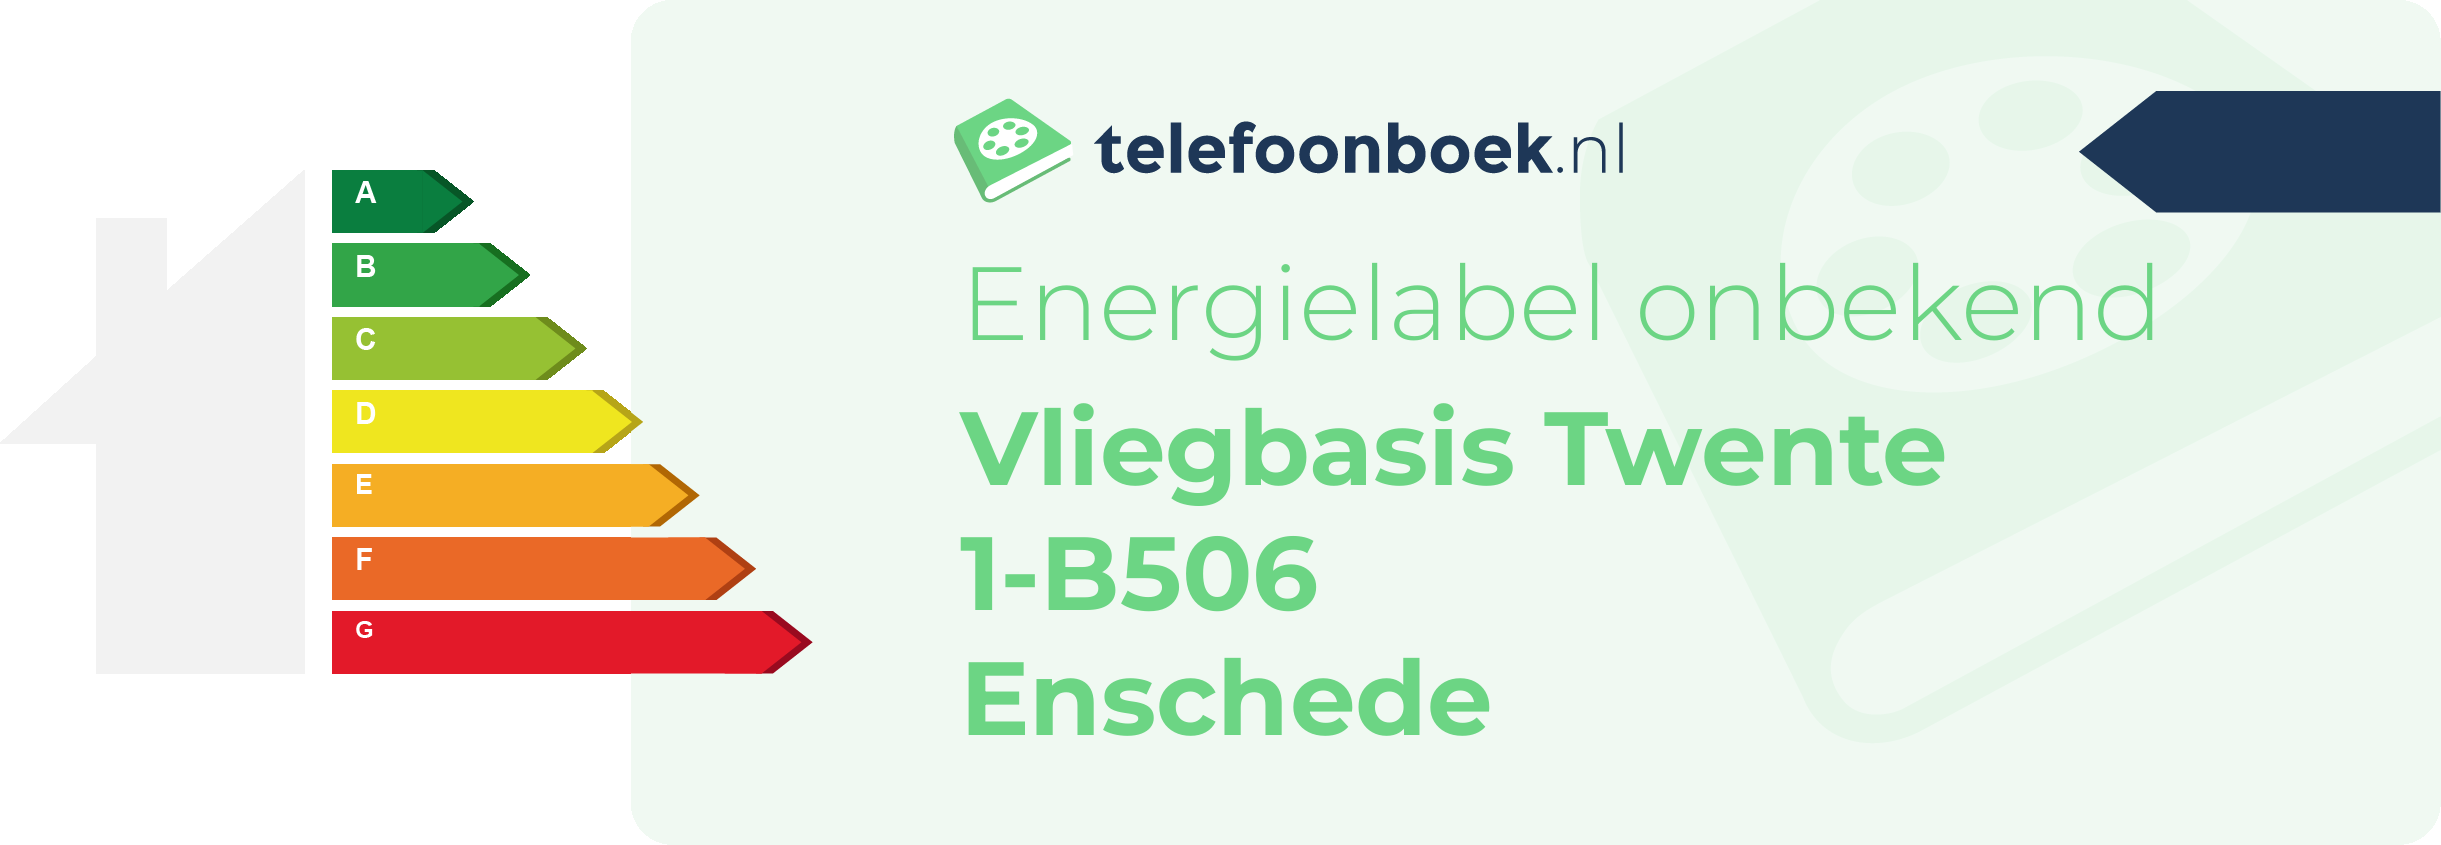 Energielabel Vliegbasis Twente 1-B506 Enschede